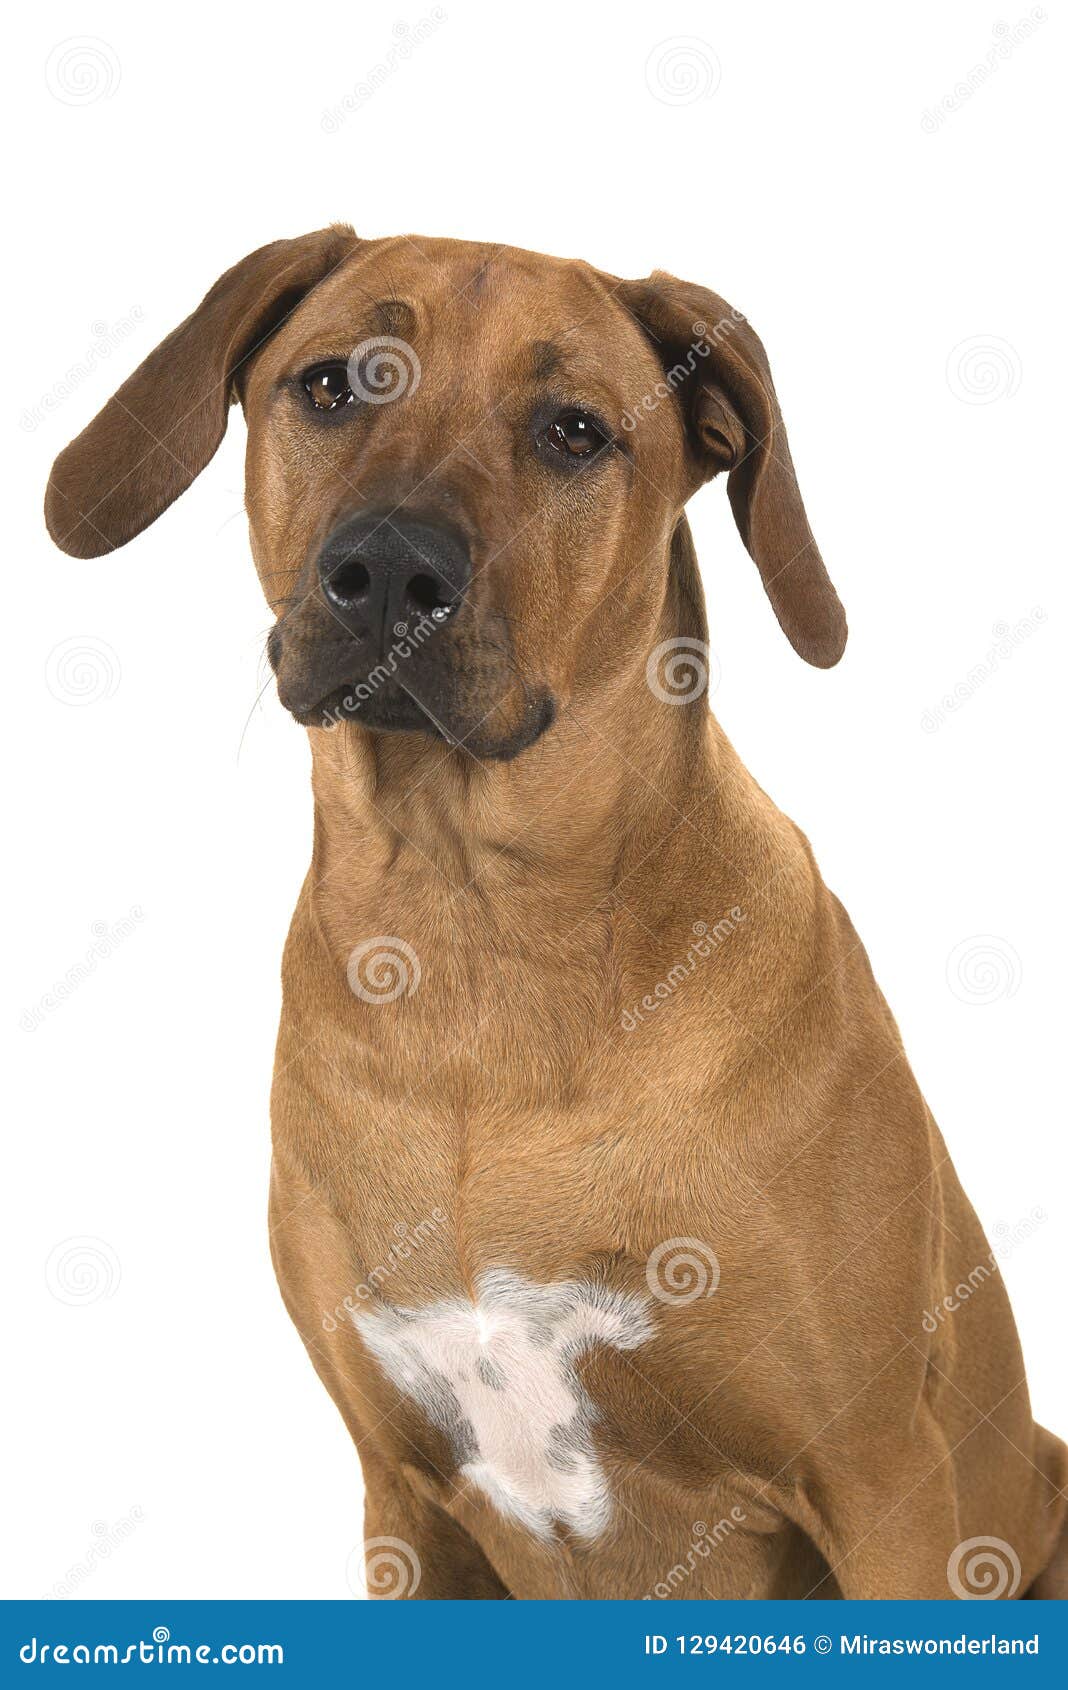 Portrait Of A Rhodesian Ridgeback Dog Isolated On A White Background Stock Photo Image Of Isolated Ridgeback 129420646